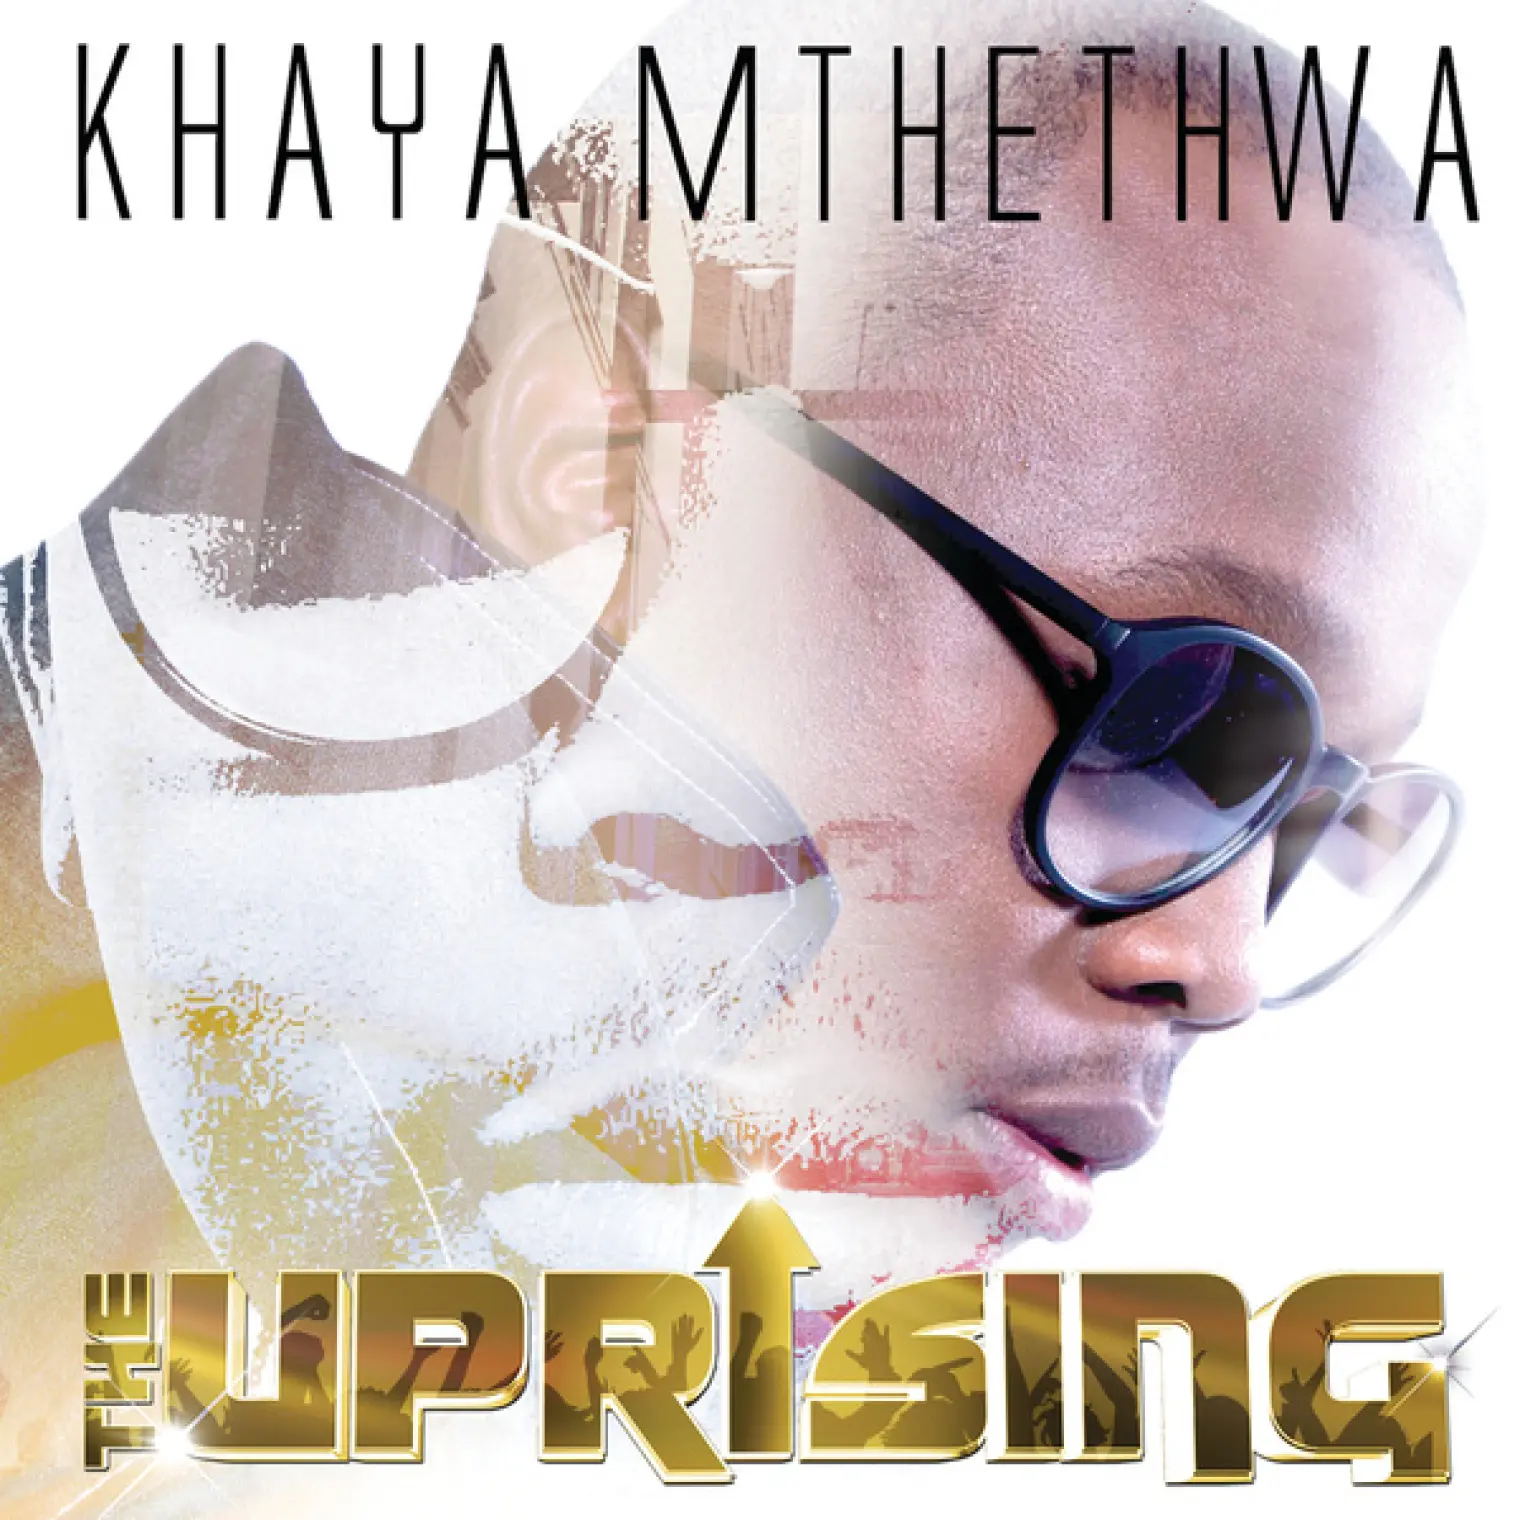 The Uprising (Deluxe) -  Khaya Mthethwa 